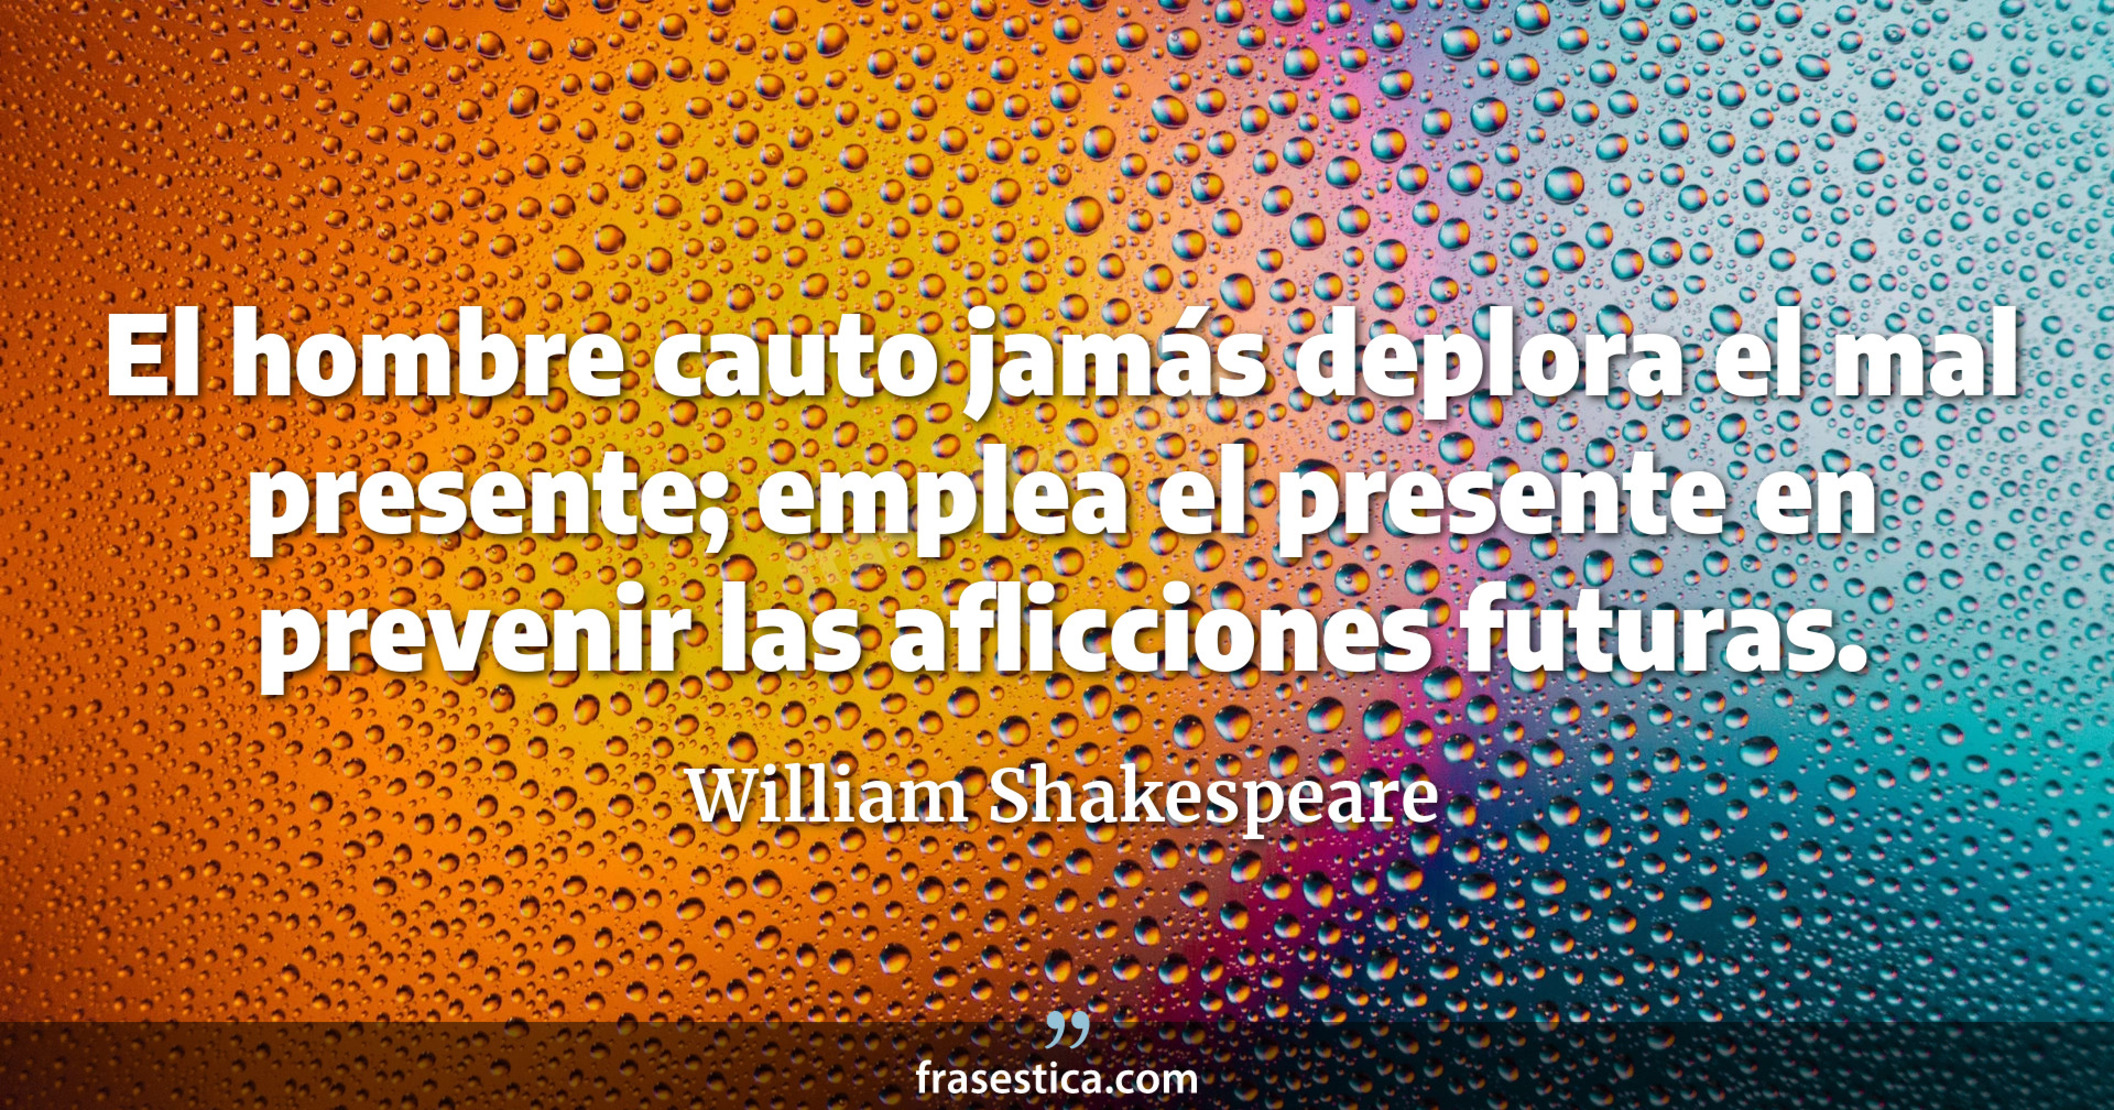 El hombre cauto jamás deplora el mal presente; emplea el presente en prevenir las aflicciones futuras. - William Shakespeare